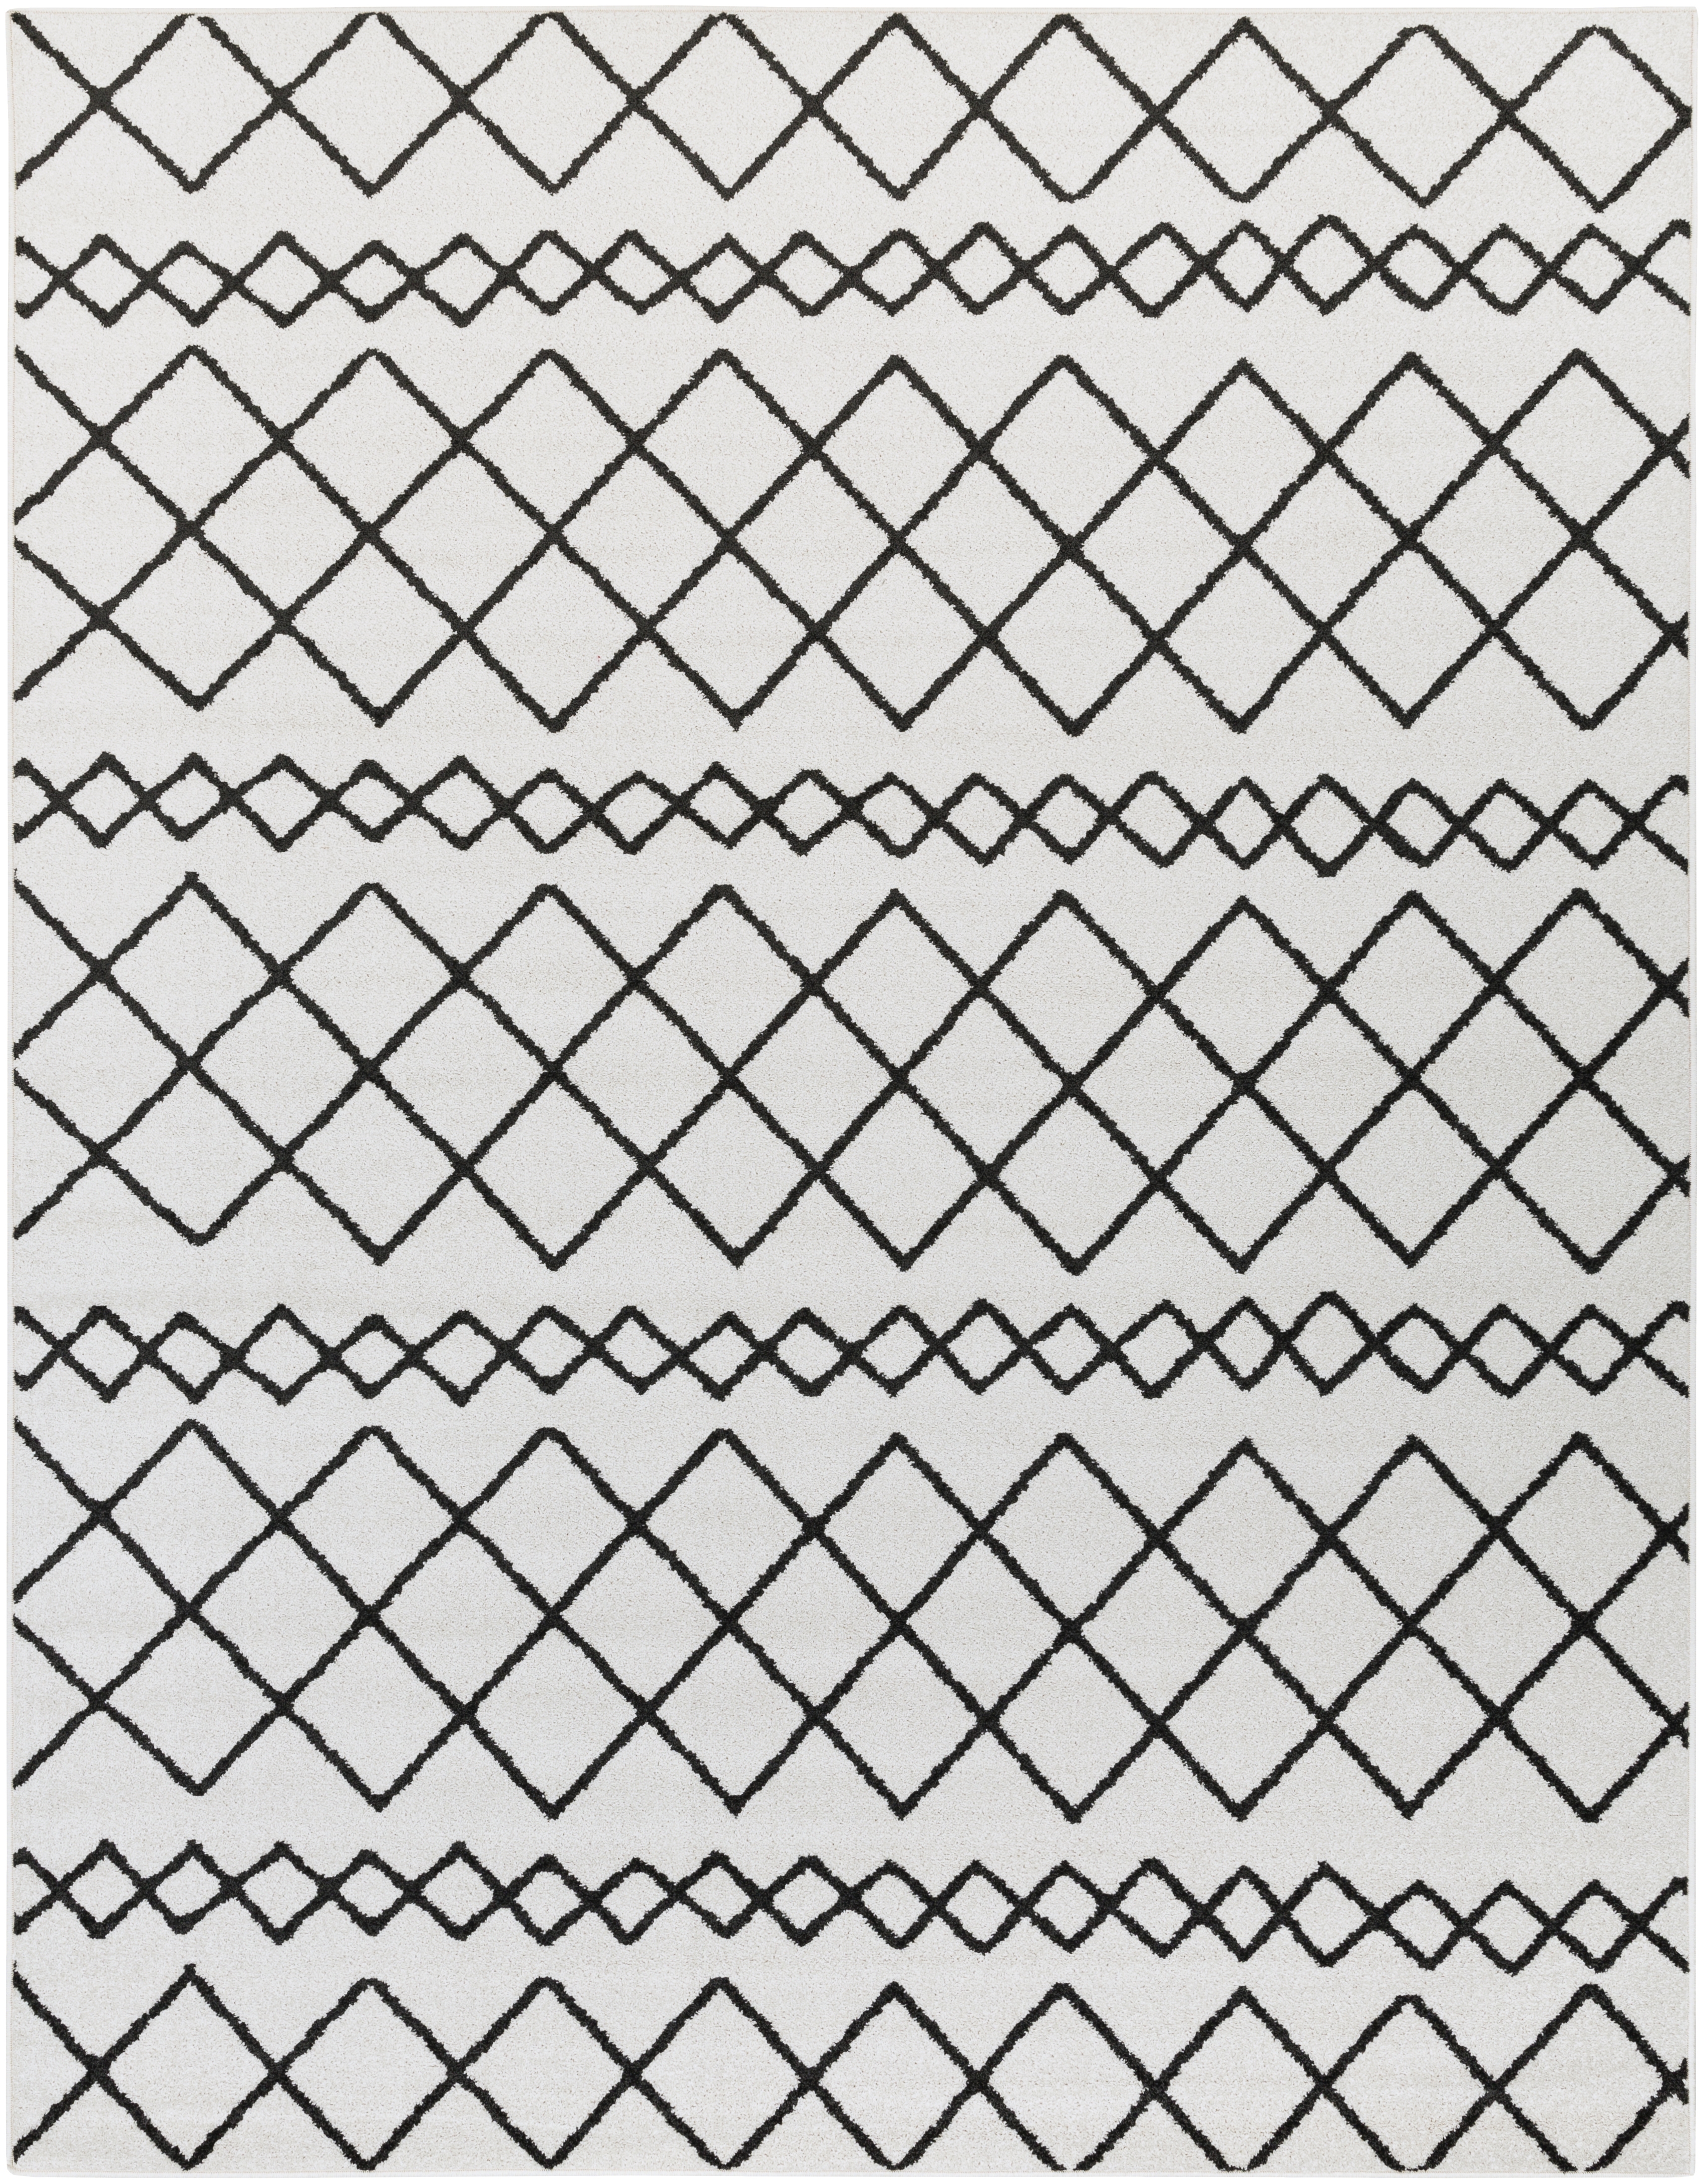 Seville Rug, 7'10" x 10'3", White - Image 0